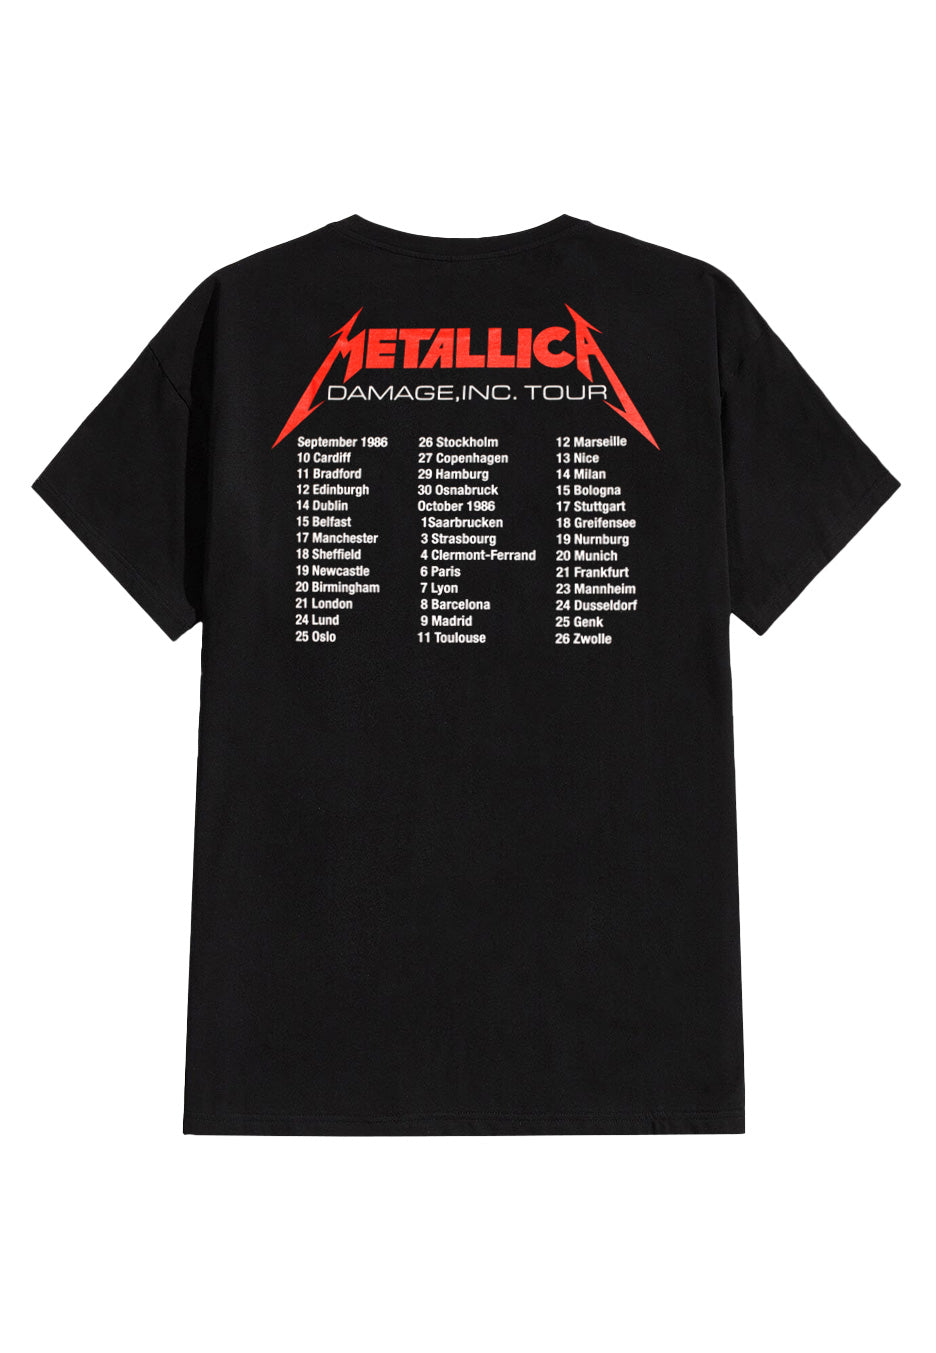 Metallica - Mop European Tour 86' - T-Shirt